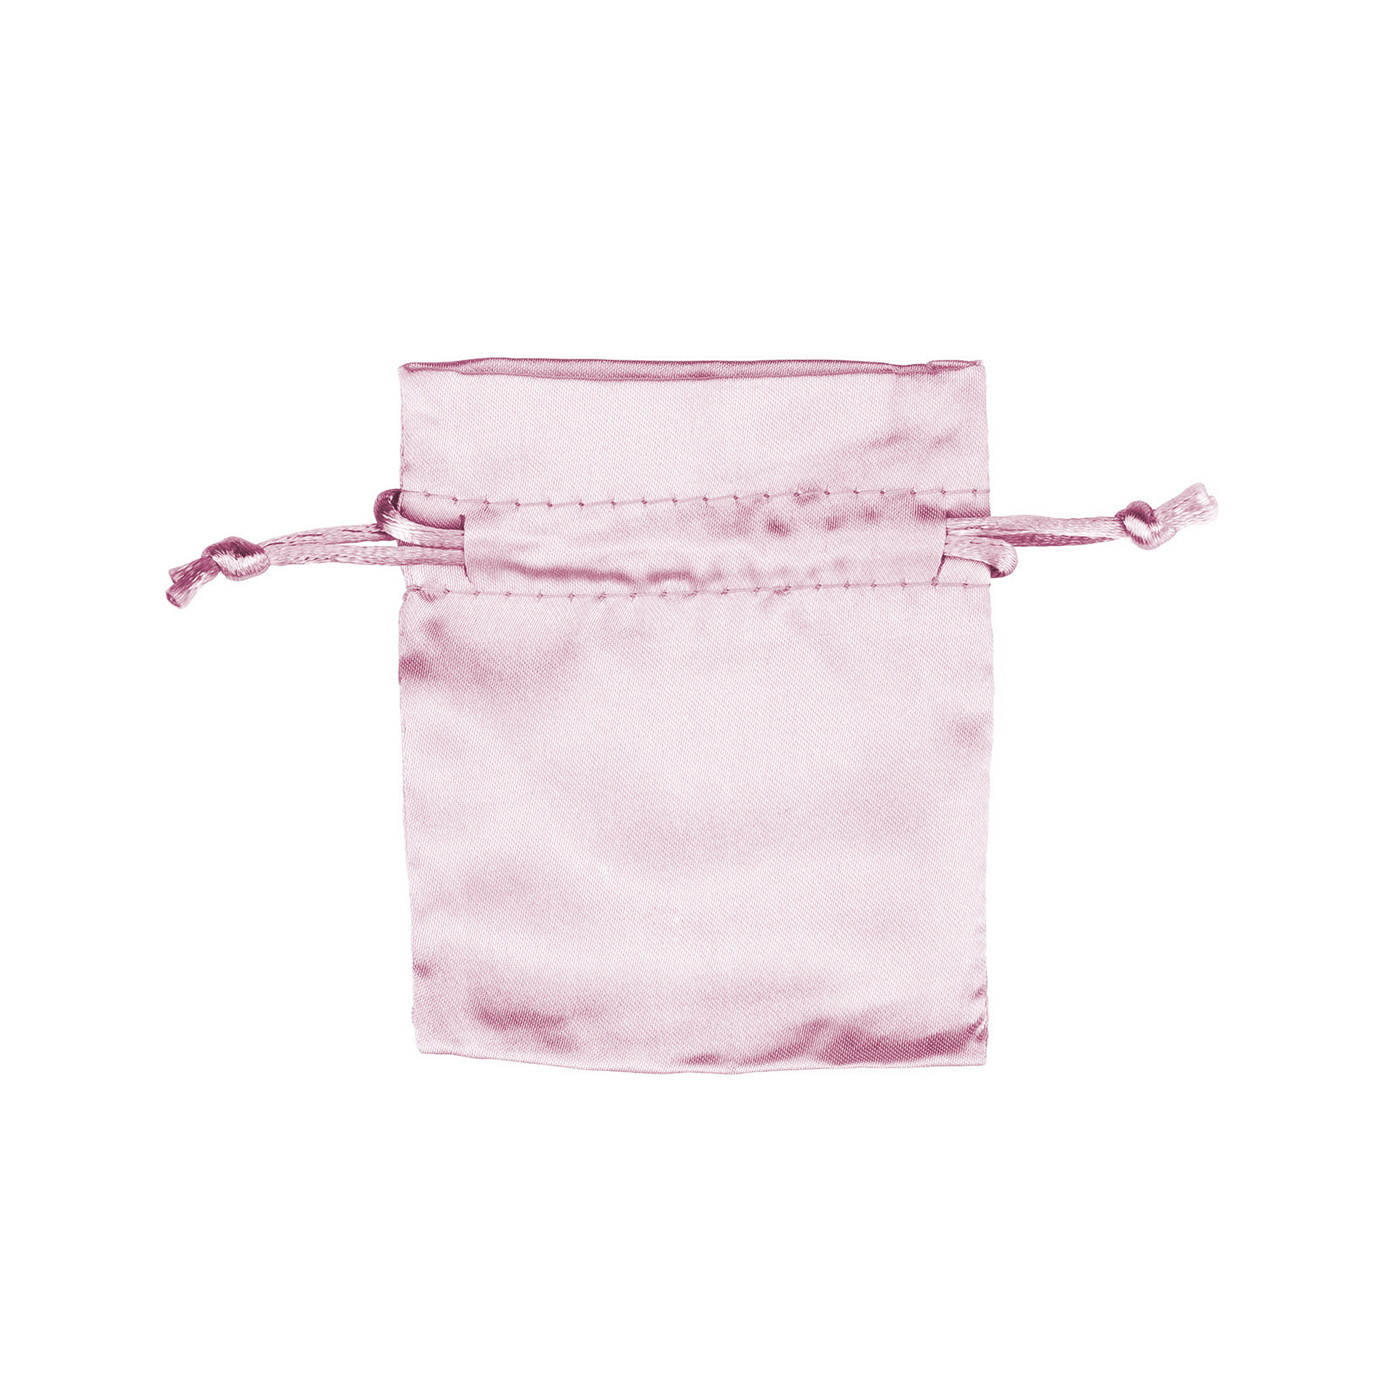 Satinbeutel mini, rosa, 75 x 90 mm - 1 Stück